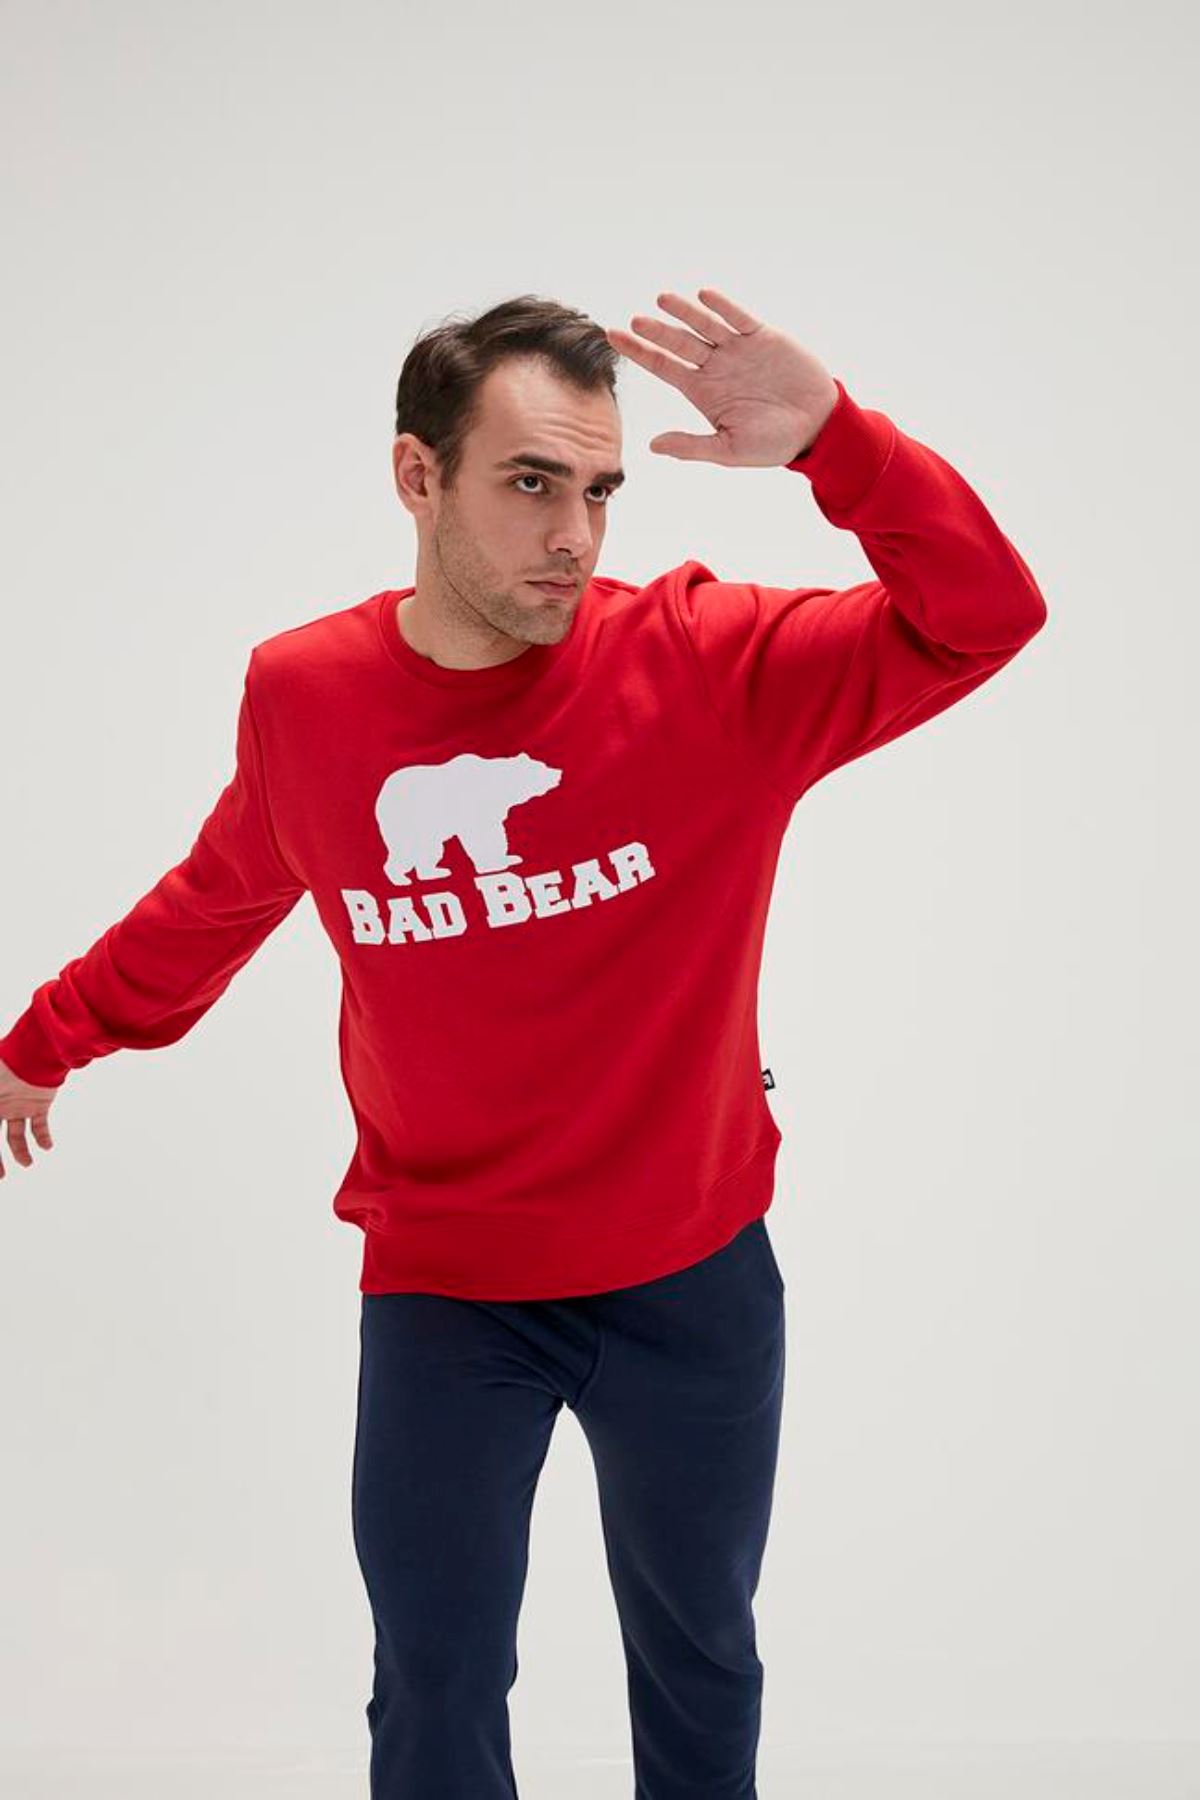 Bad Bear Bad Bear Crewneck Erkek Kırmızı Sweat - 20.02.12.011